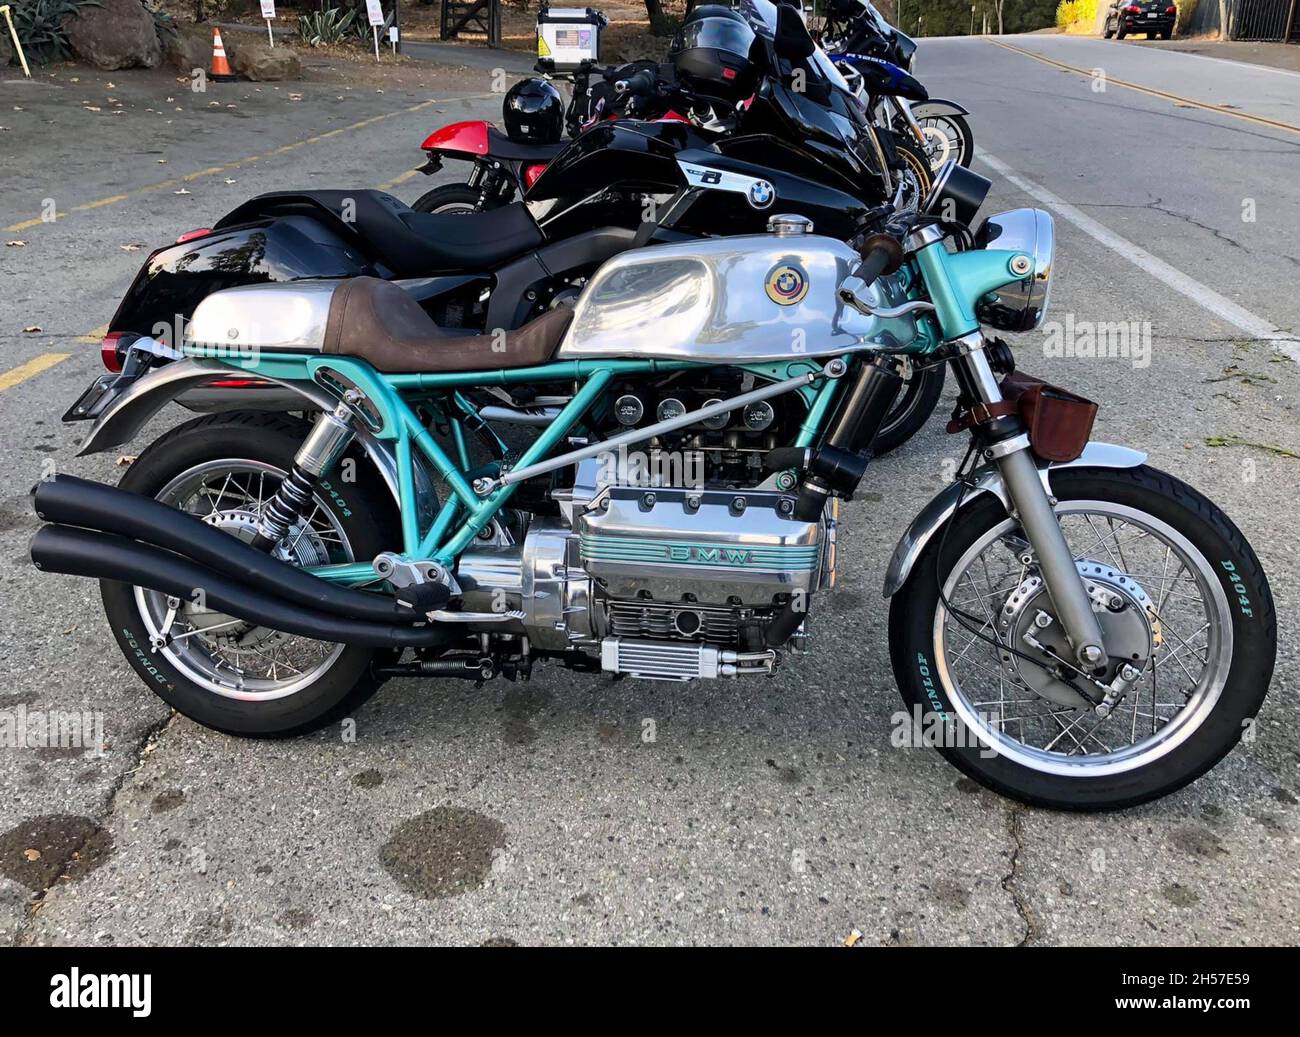 Antike BMW Motorrad, in Chrom und grün angepasst. Neben anderen Motorrädern geparkt. Los Angeles, Usa. Stockfoto